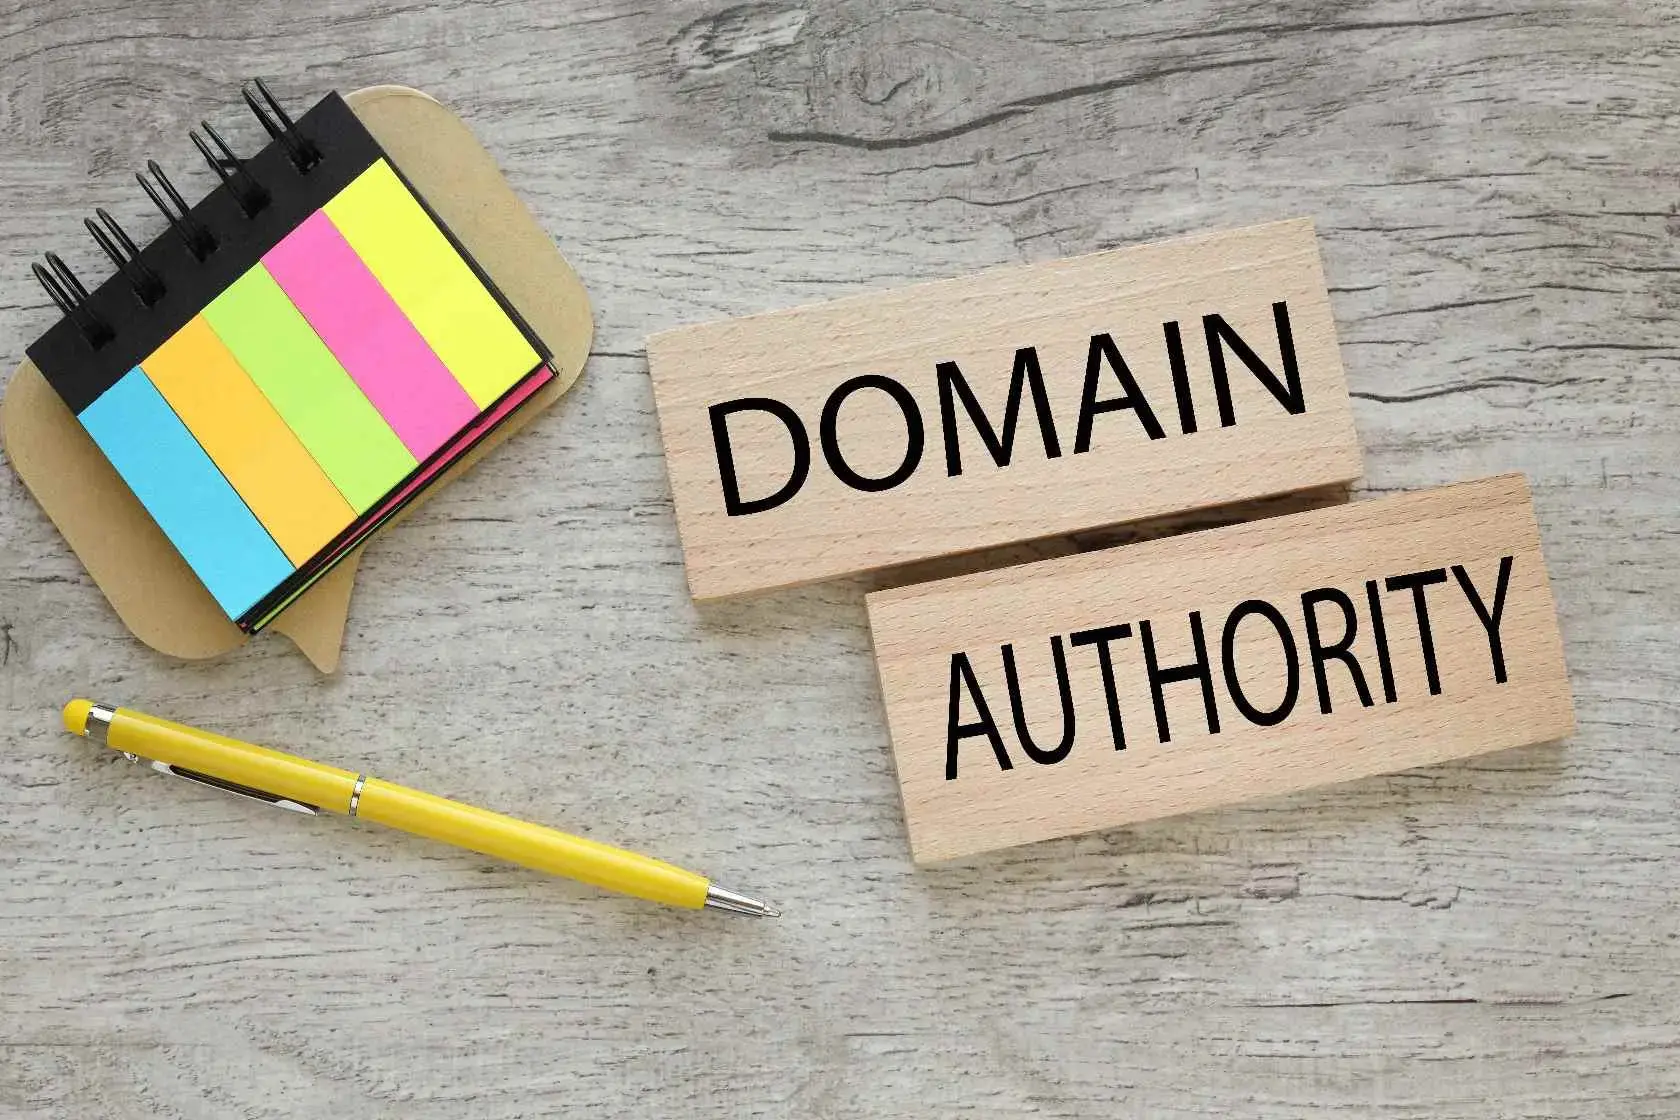 Domain Authority